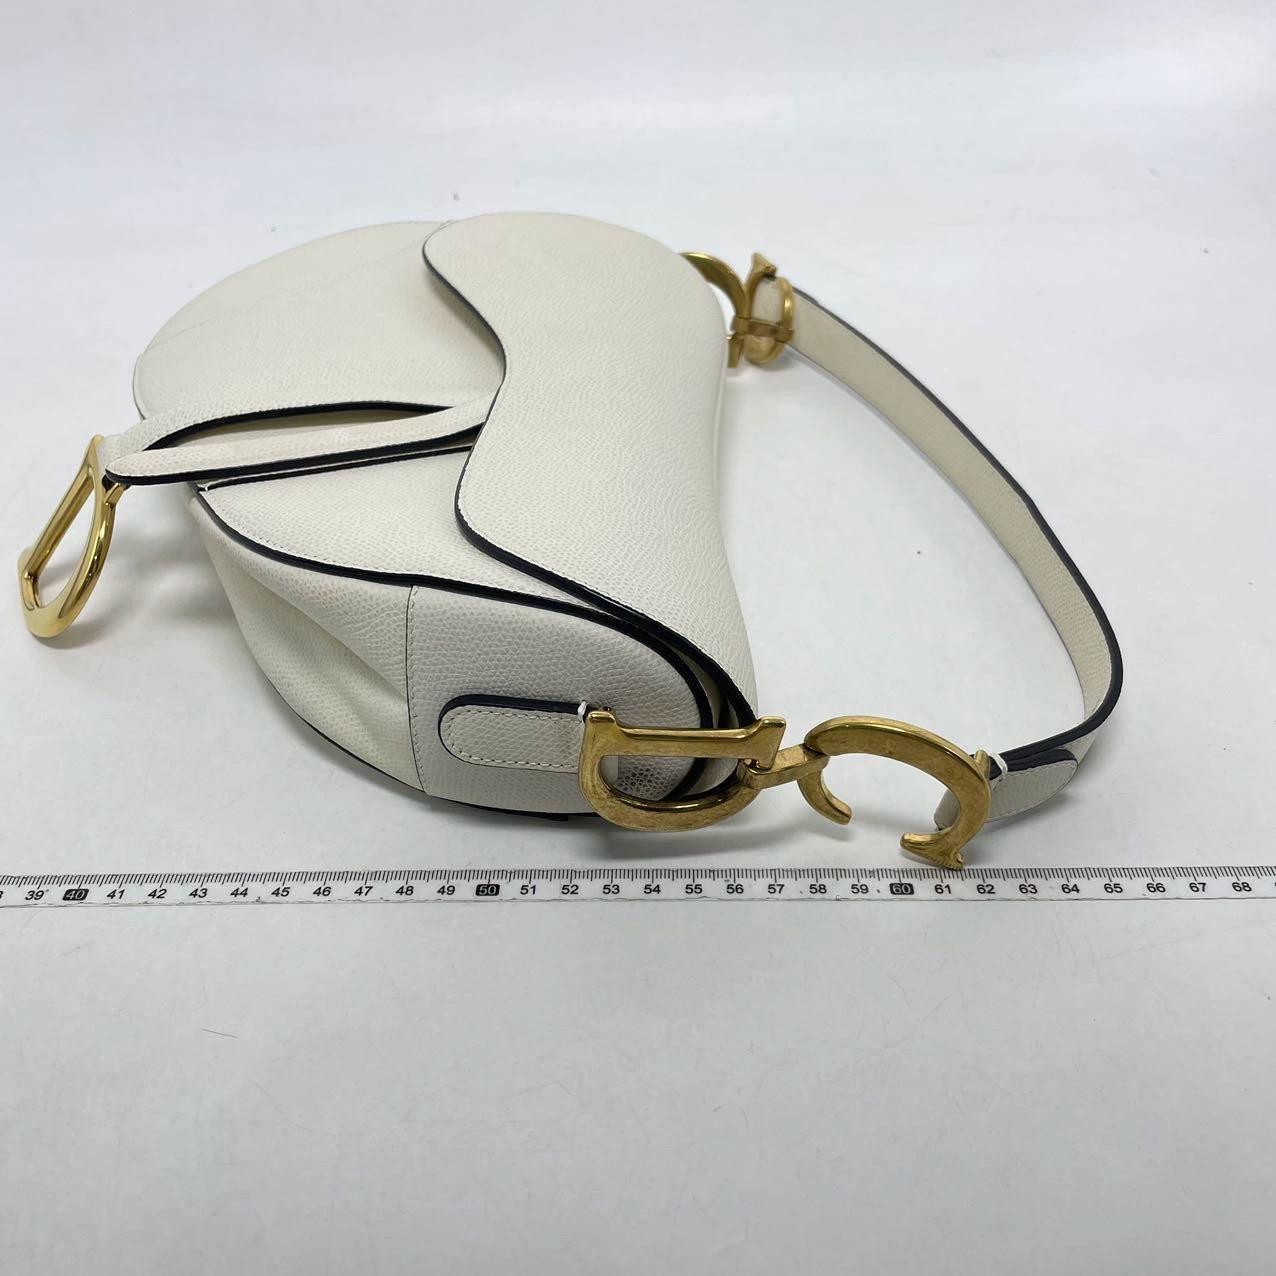 Dior Saddle Bag 2018 aus weißem, genarbtem Kalbsleder. Das legendäre Design ist in der Größe Medium erhältlich und verfügt über eine magnetische Klappe und eine CD-Signatur in Antikgold auf beiden Seiten des Riemens. Die Satteltasche kann mit der